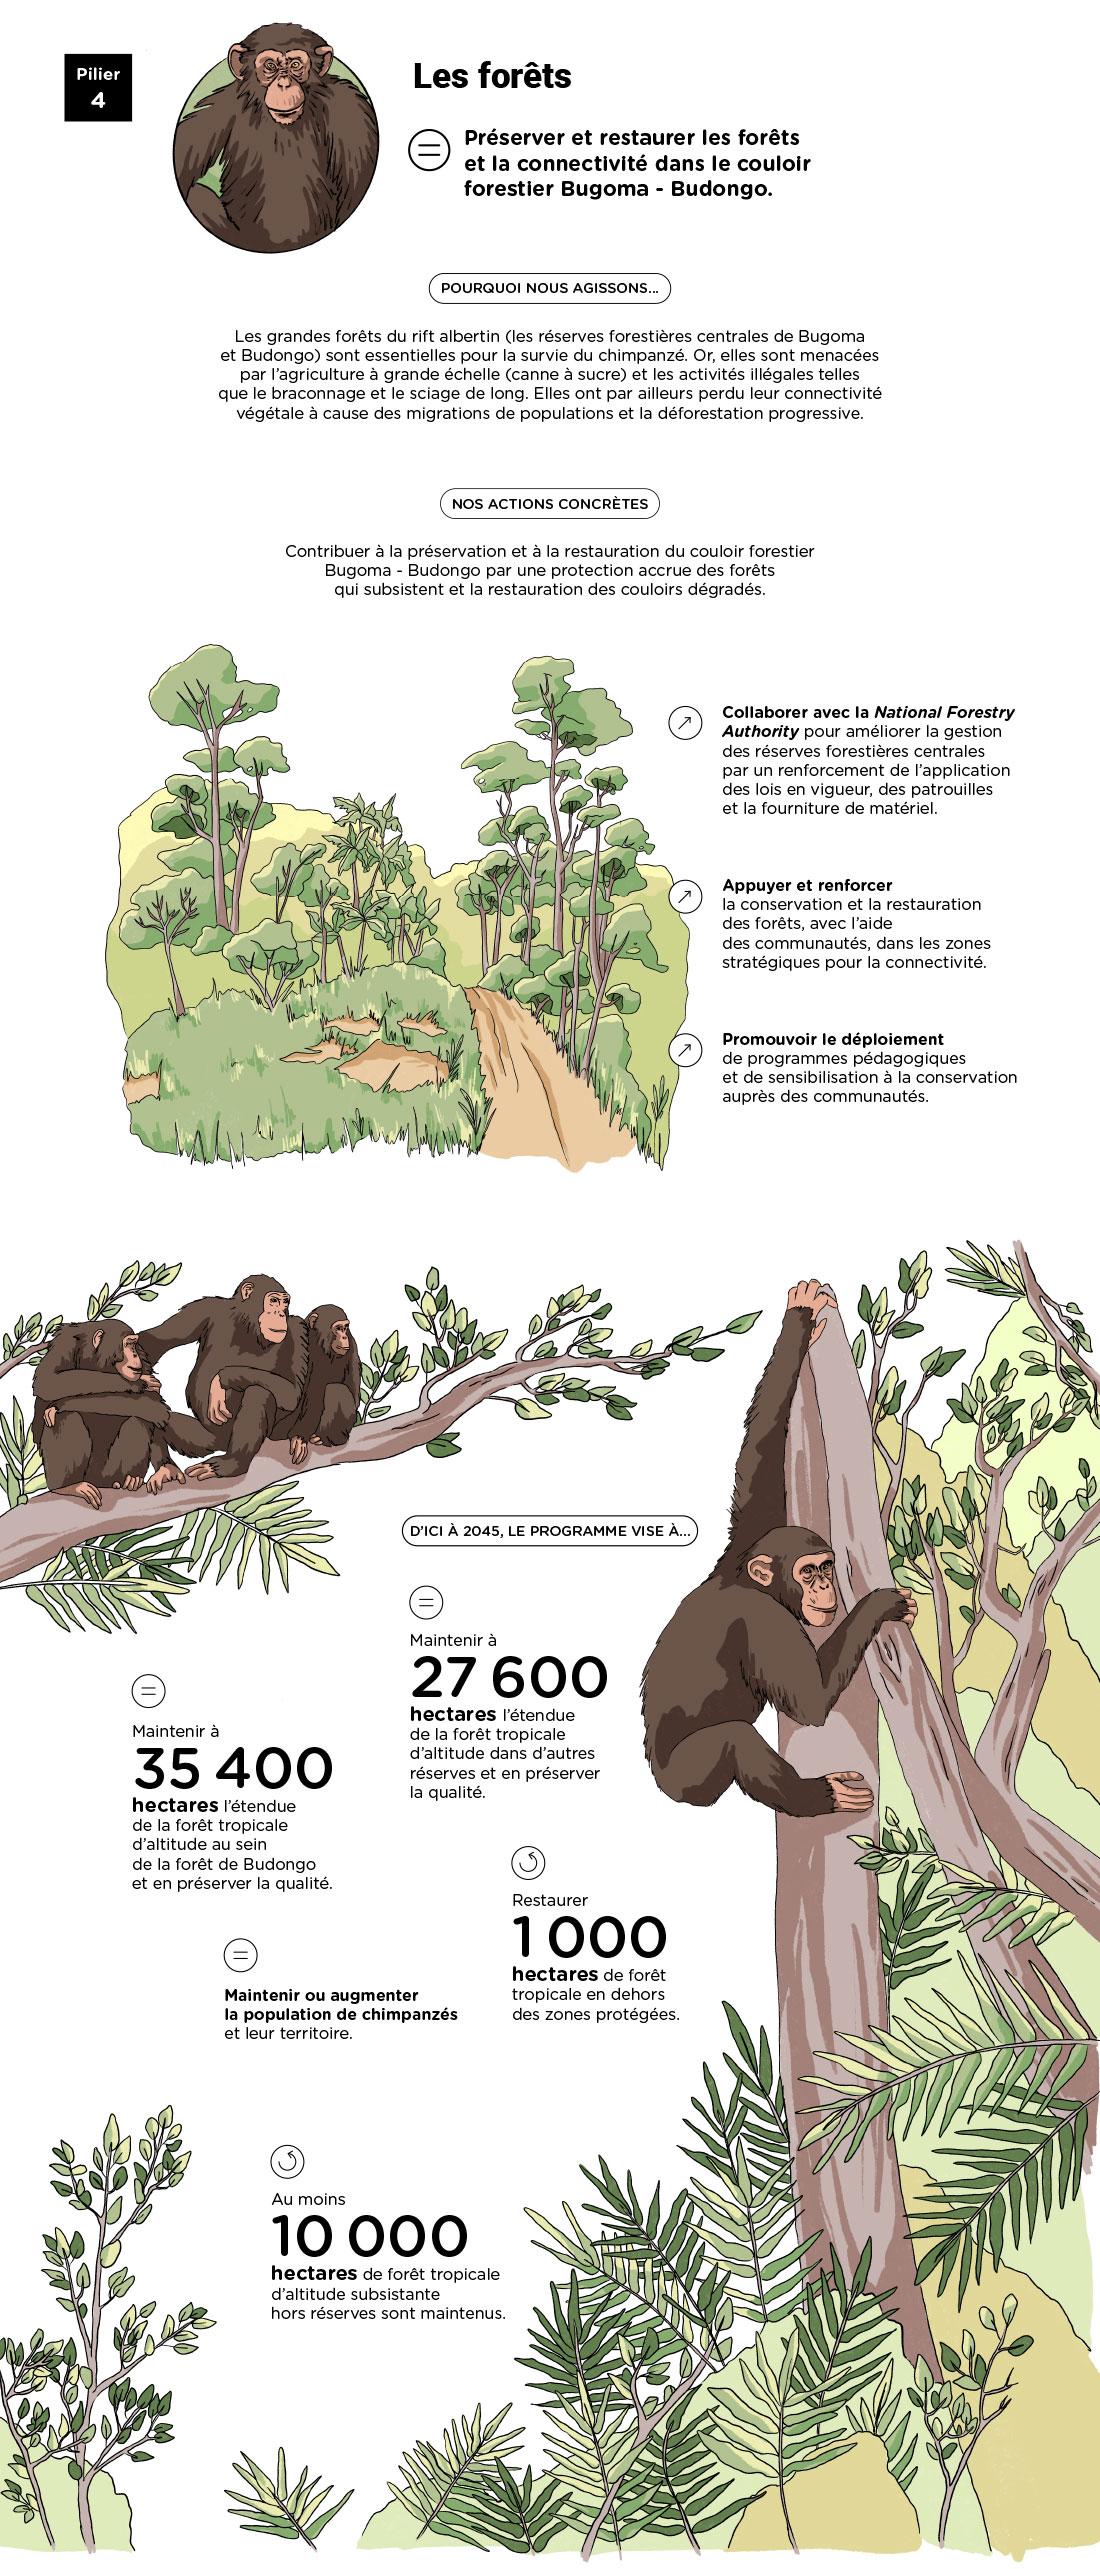 Infographie « Pilier 4 : Les forêts » - voir description détaillée ci-après